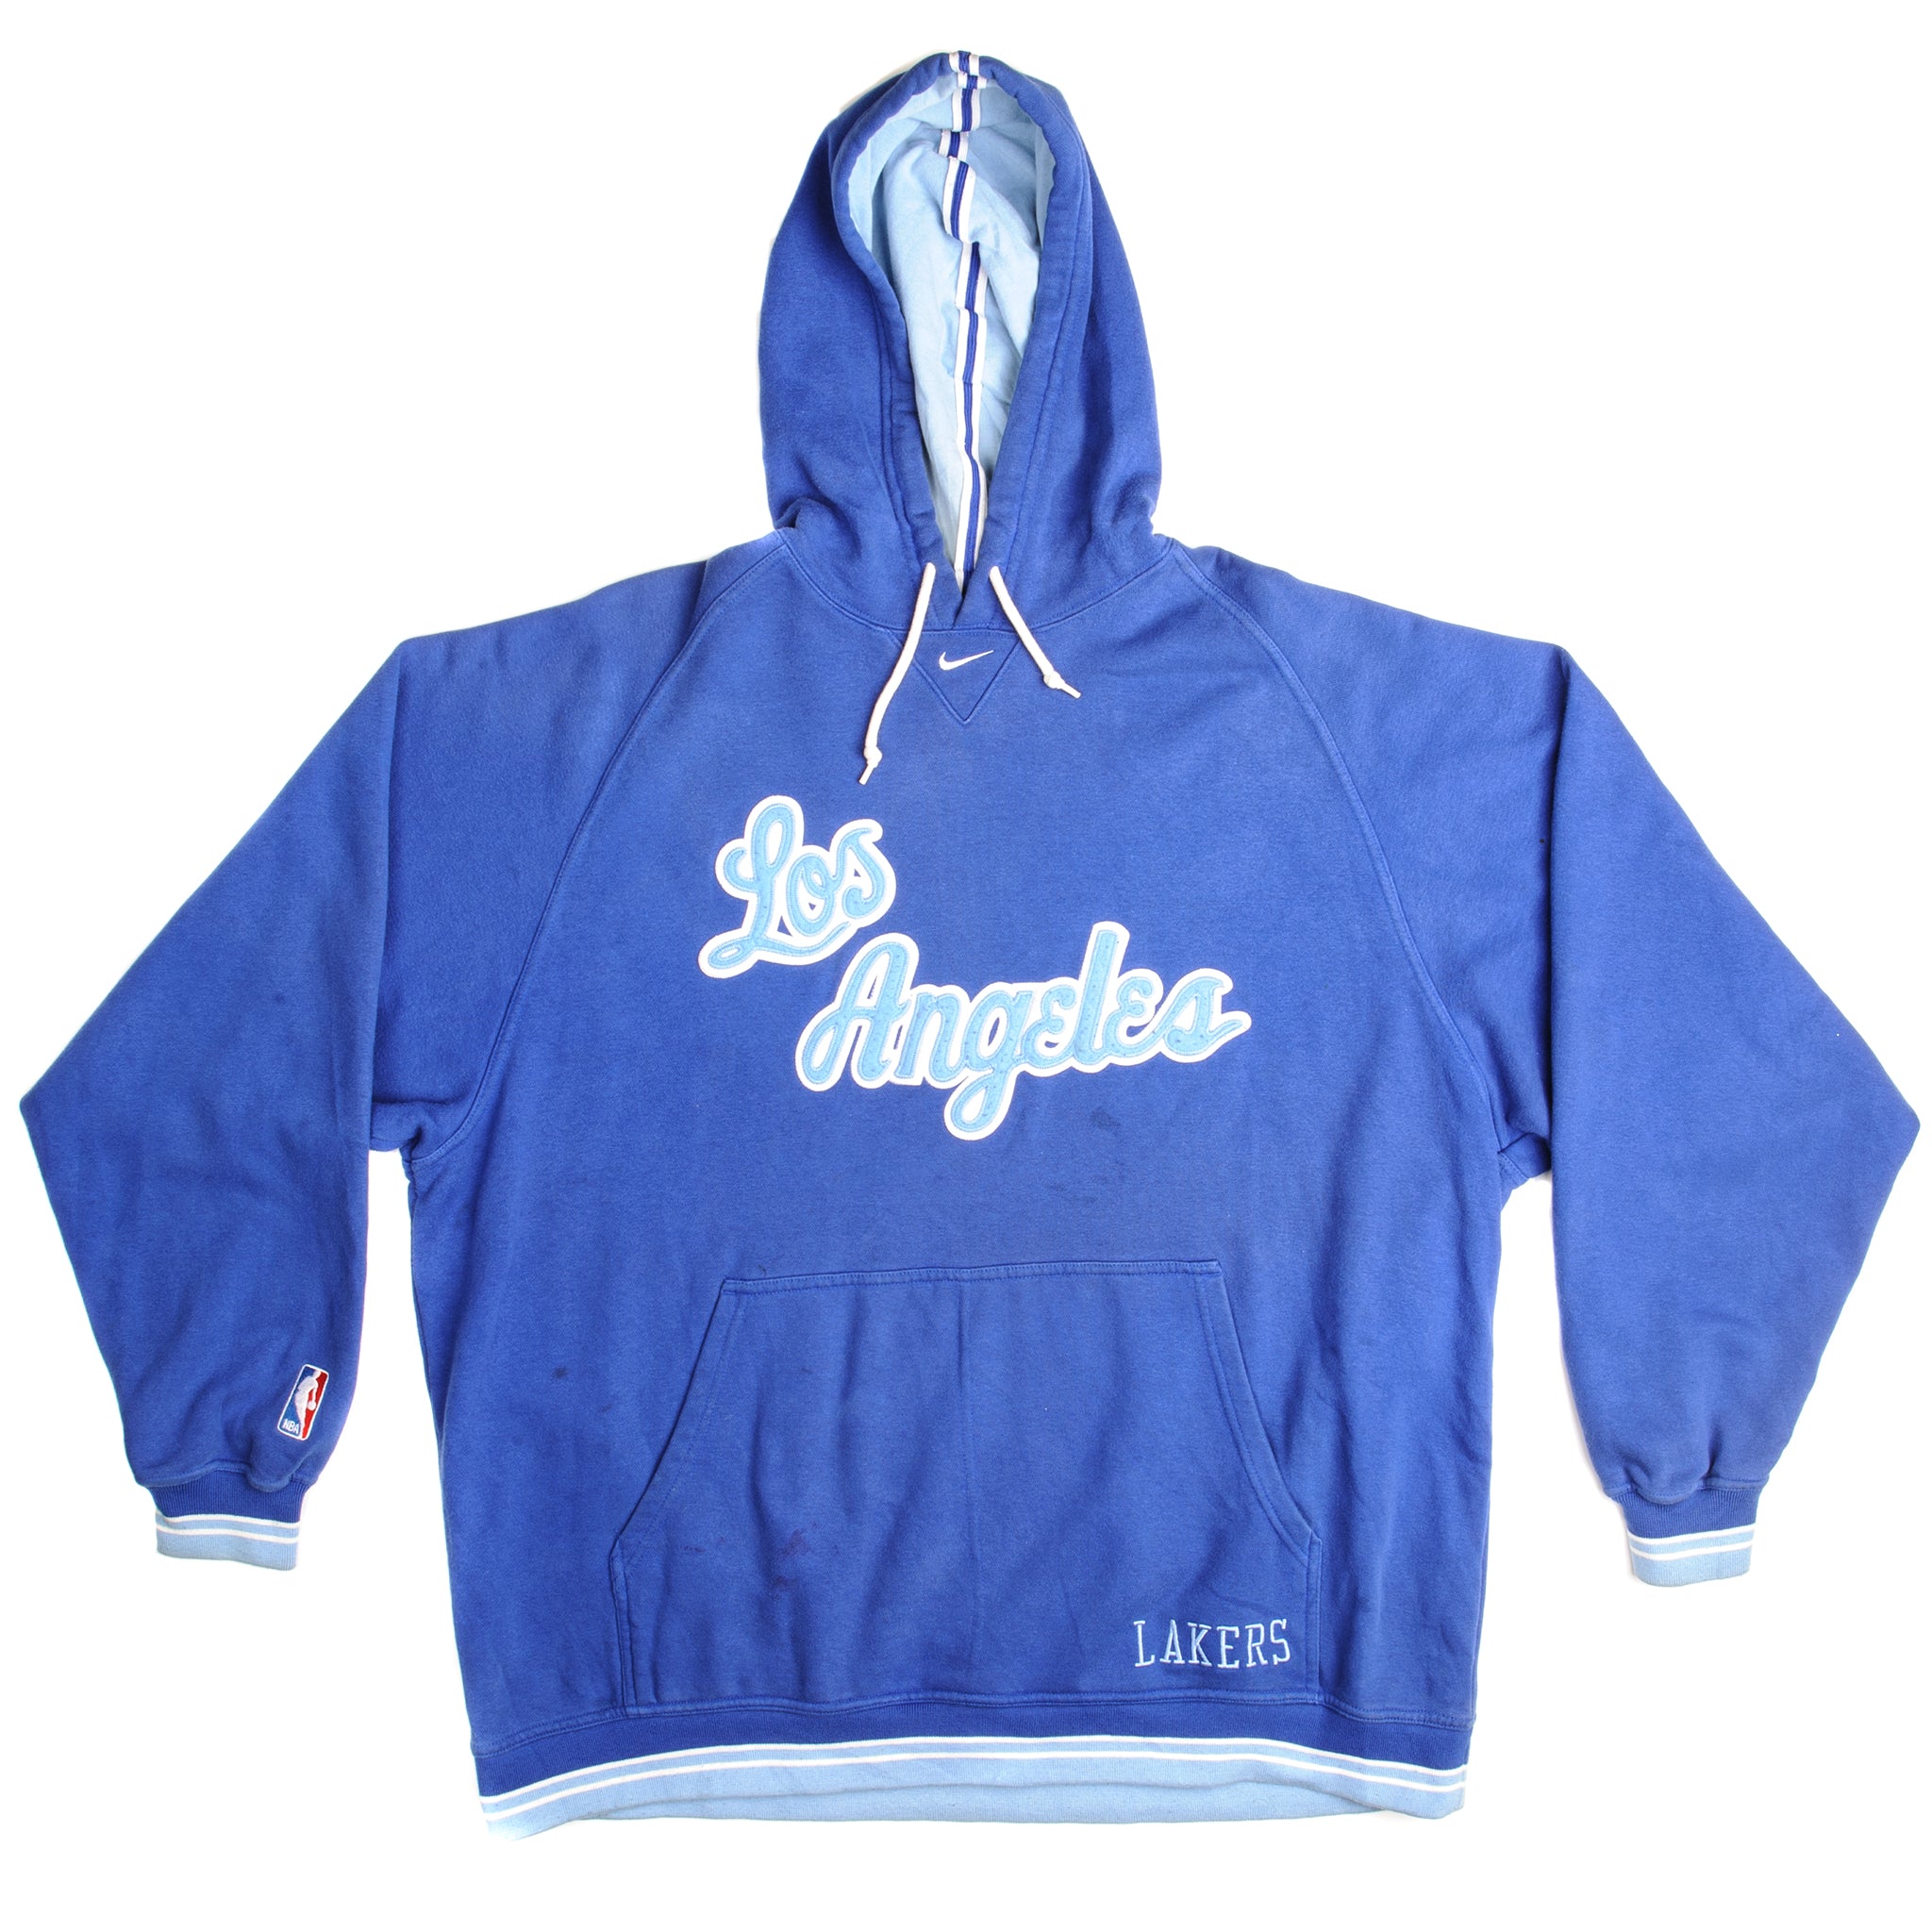 Vintage Nike NBA Philadelphia Sixers Hoodie Swoosh Sweatshirt Size 2XL